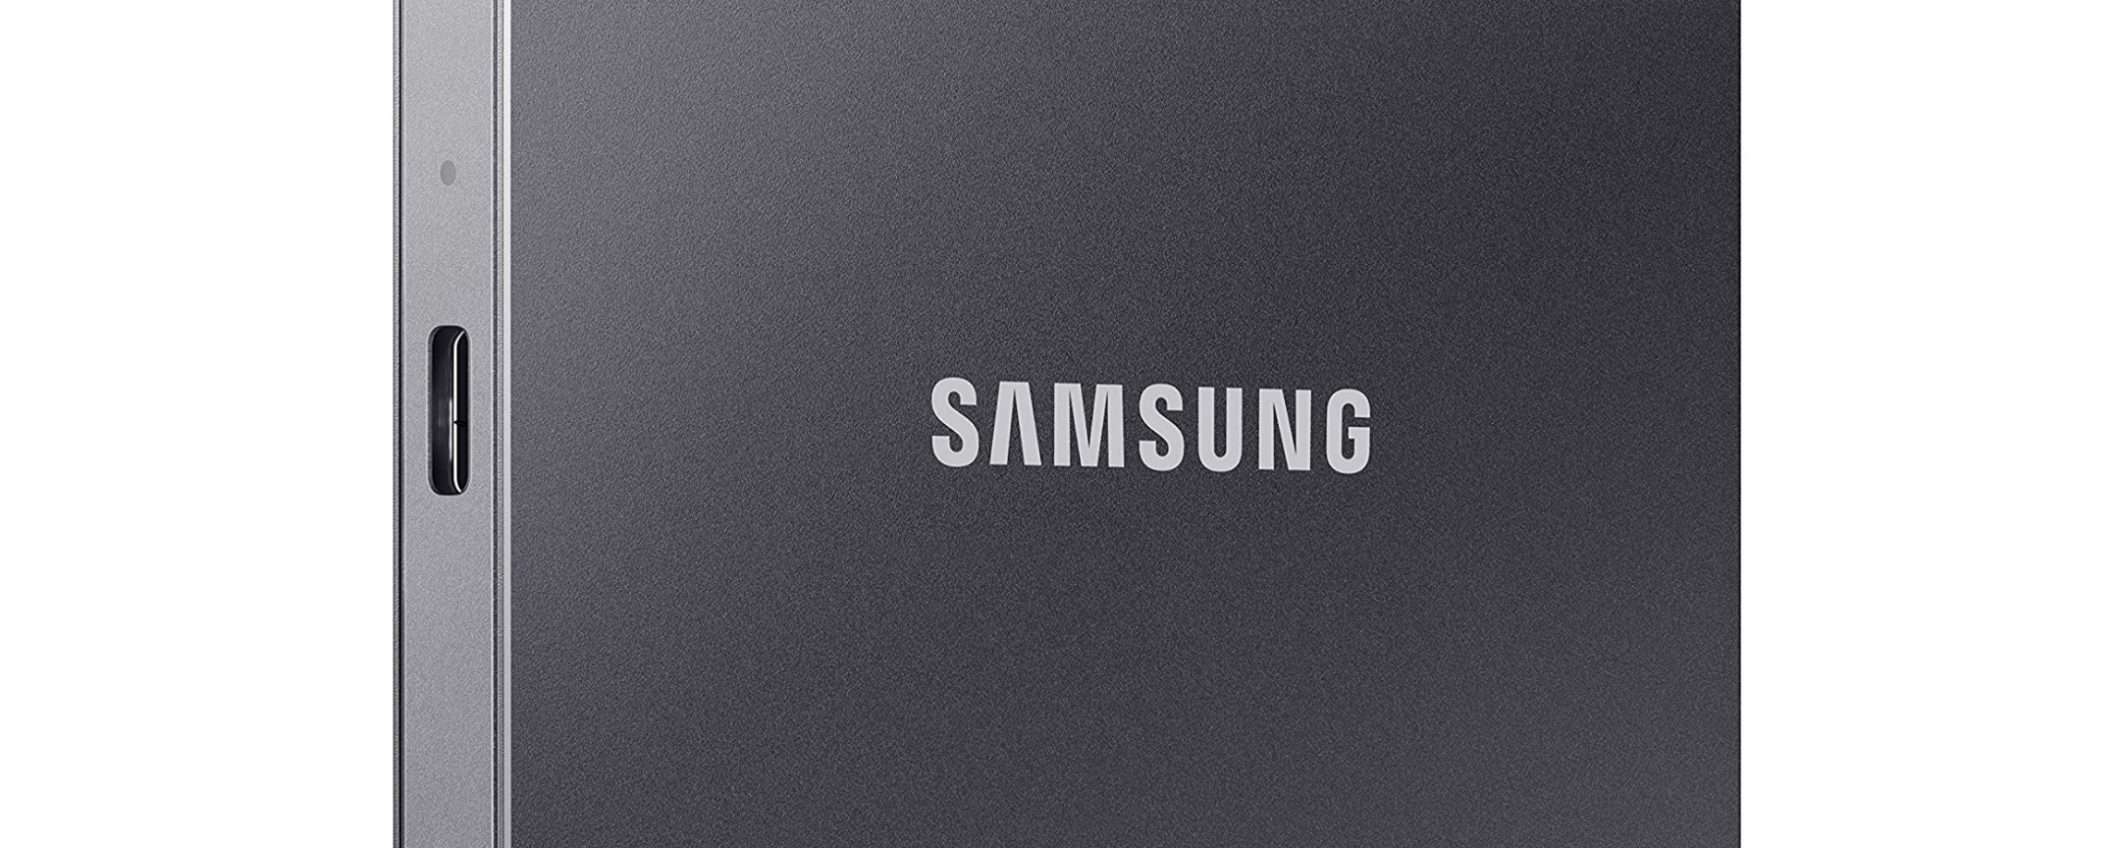 Samsung T7 1TB: l'SSD NVMe portatile dalle performance eccezionali